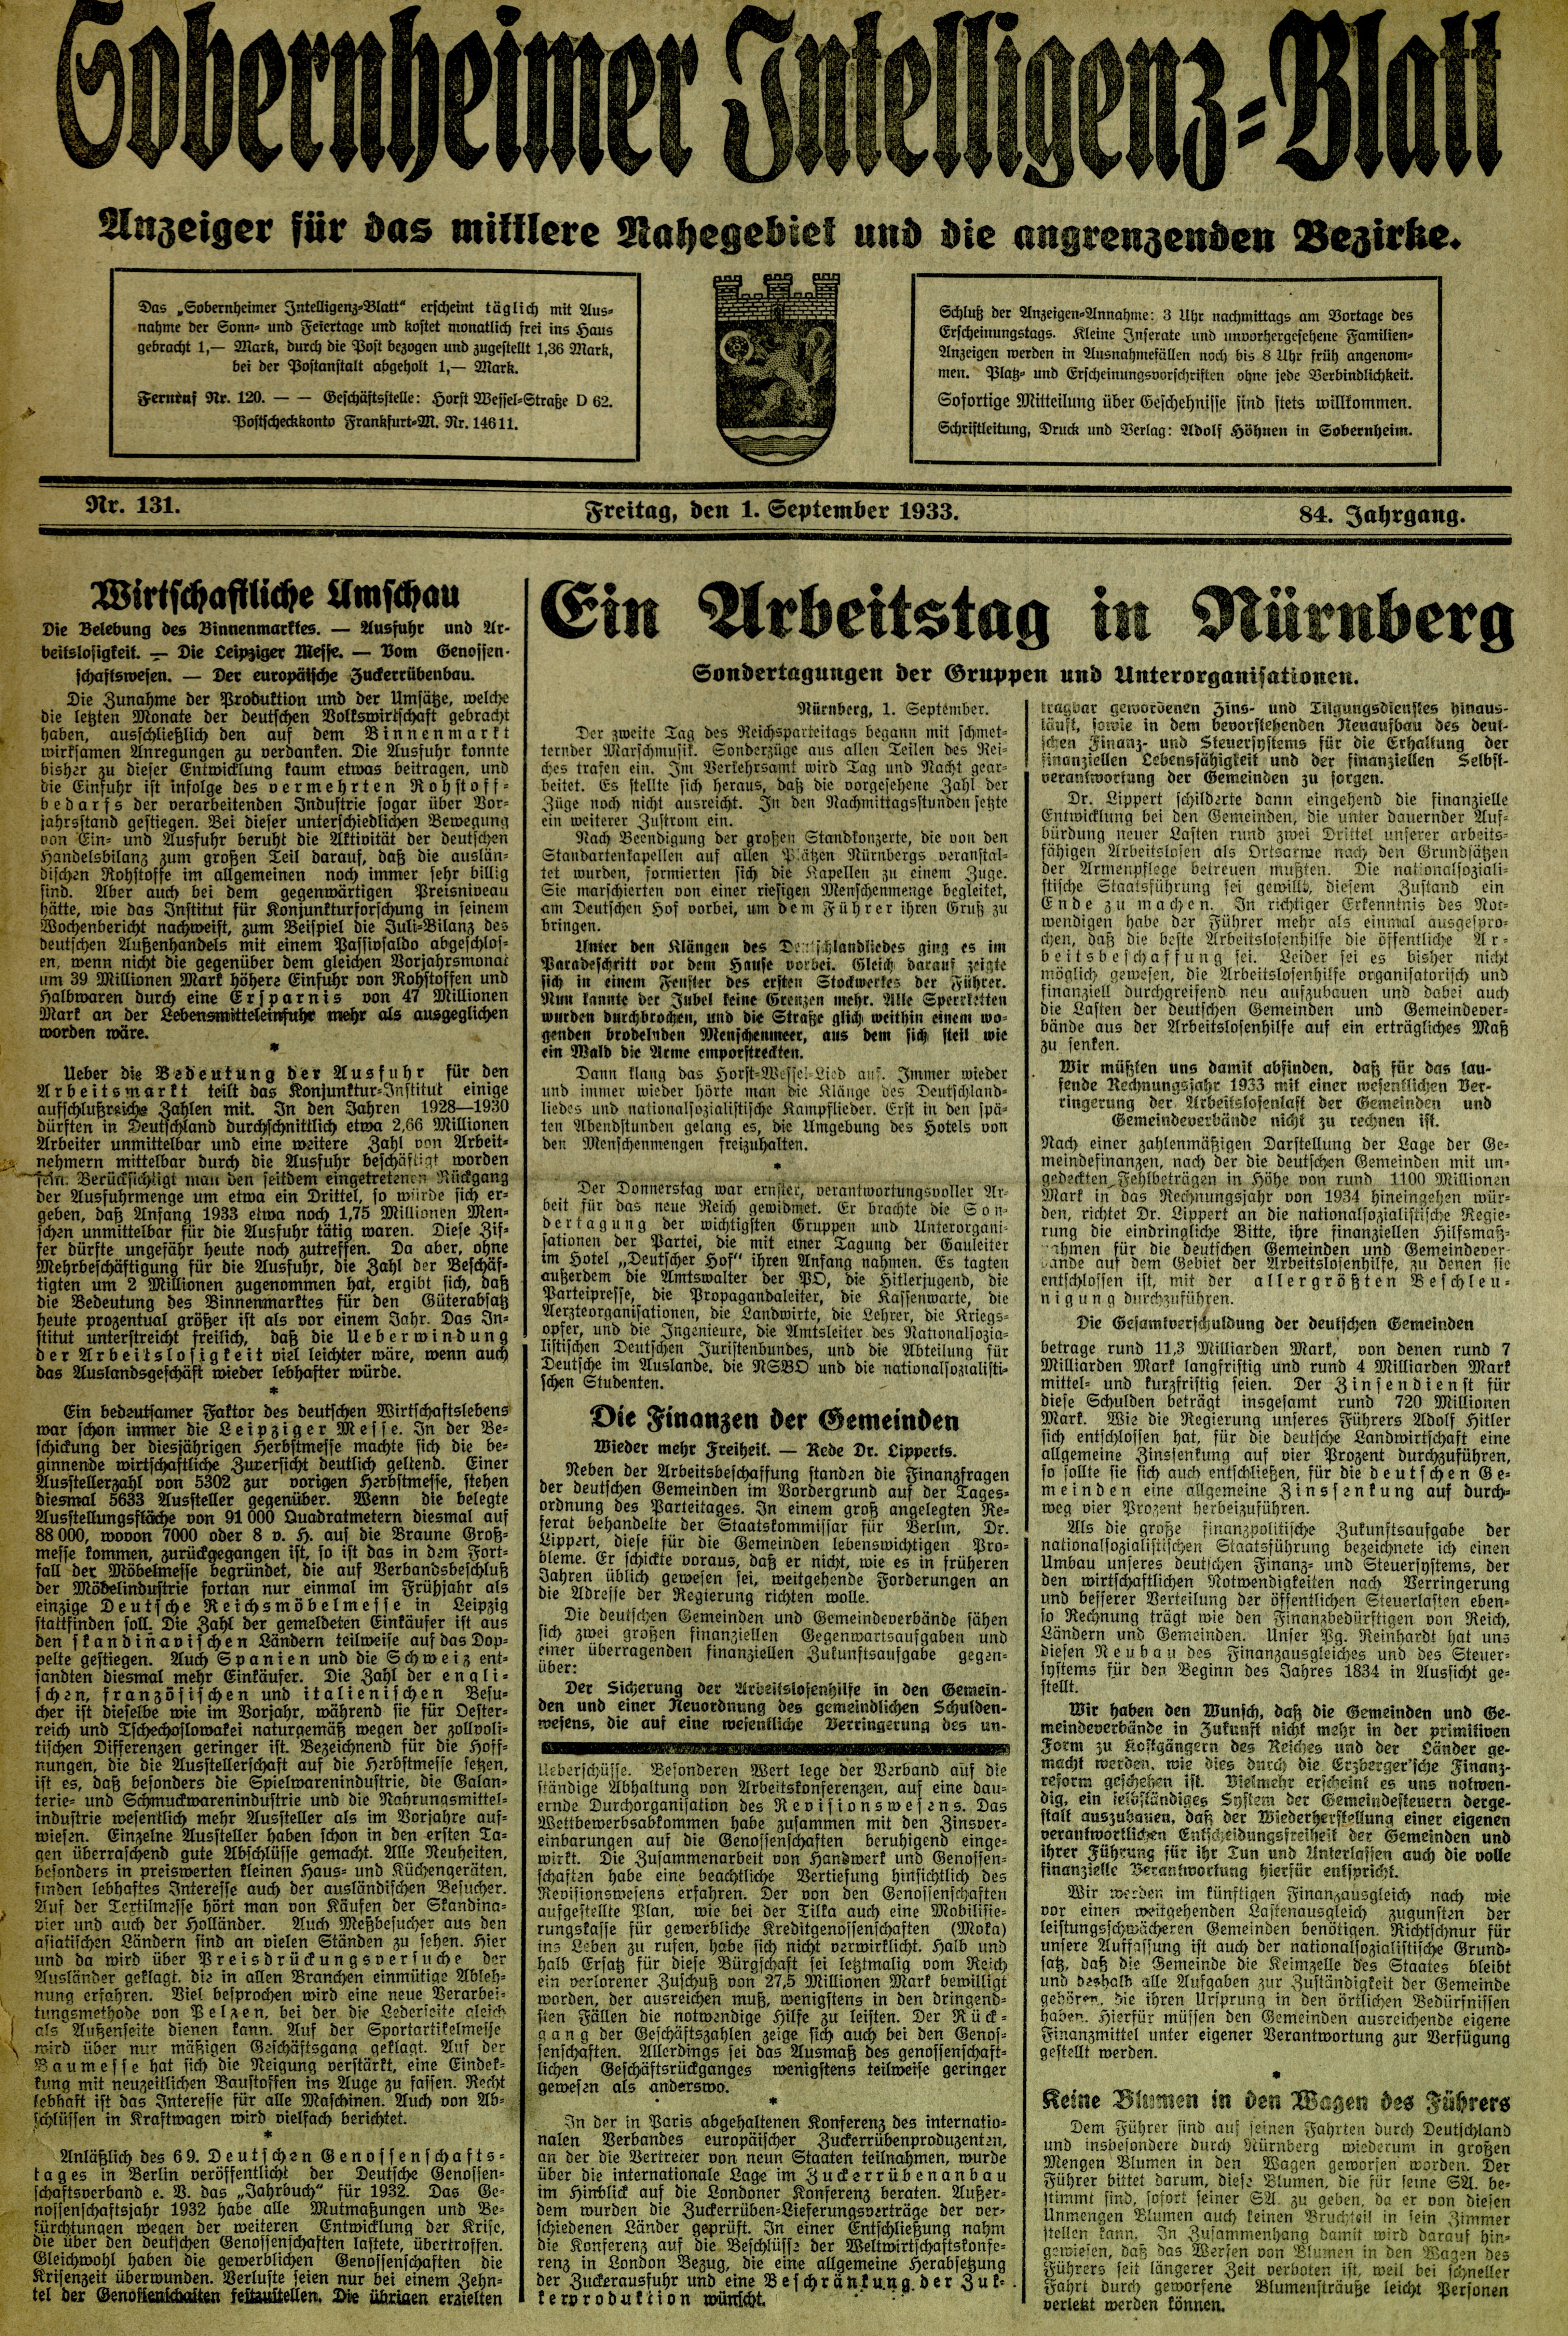 Zeitung: Sobernheimer Intelligenzblatt; September 1933, Jg. 84 Nr. 131 (Heimatmuseum Bad Sobernheim CC BY-NC-SA)